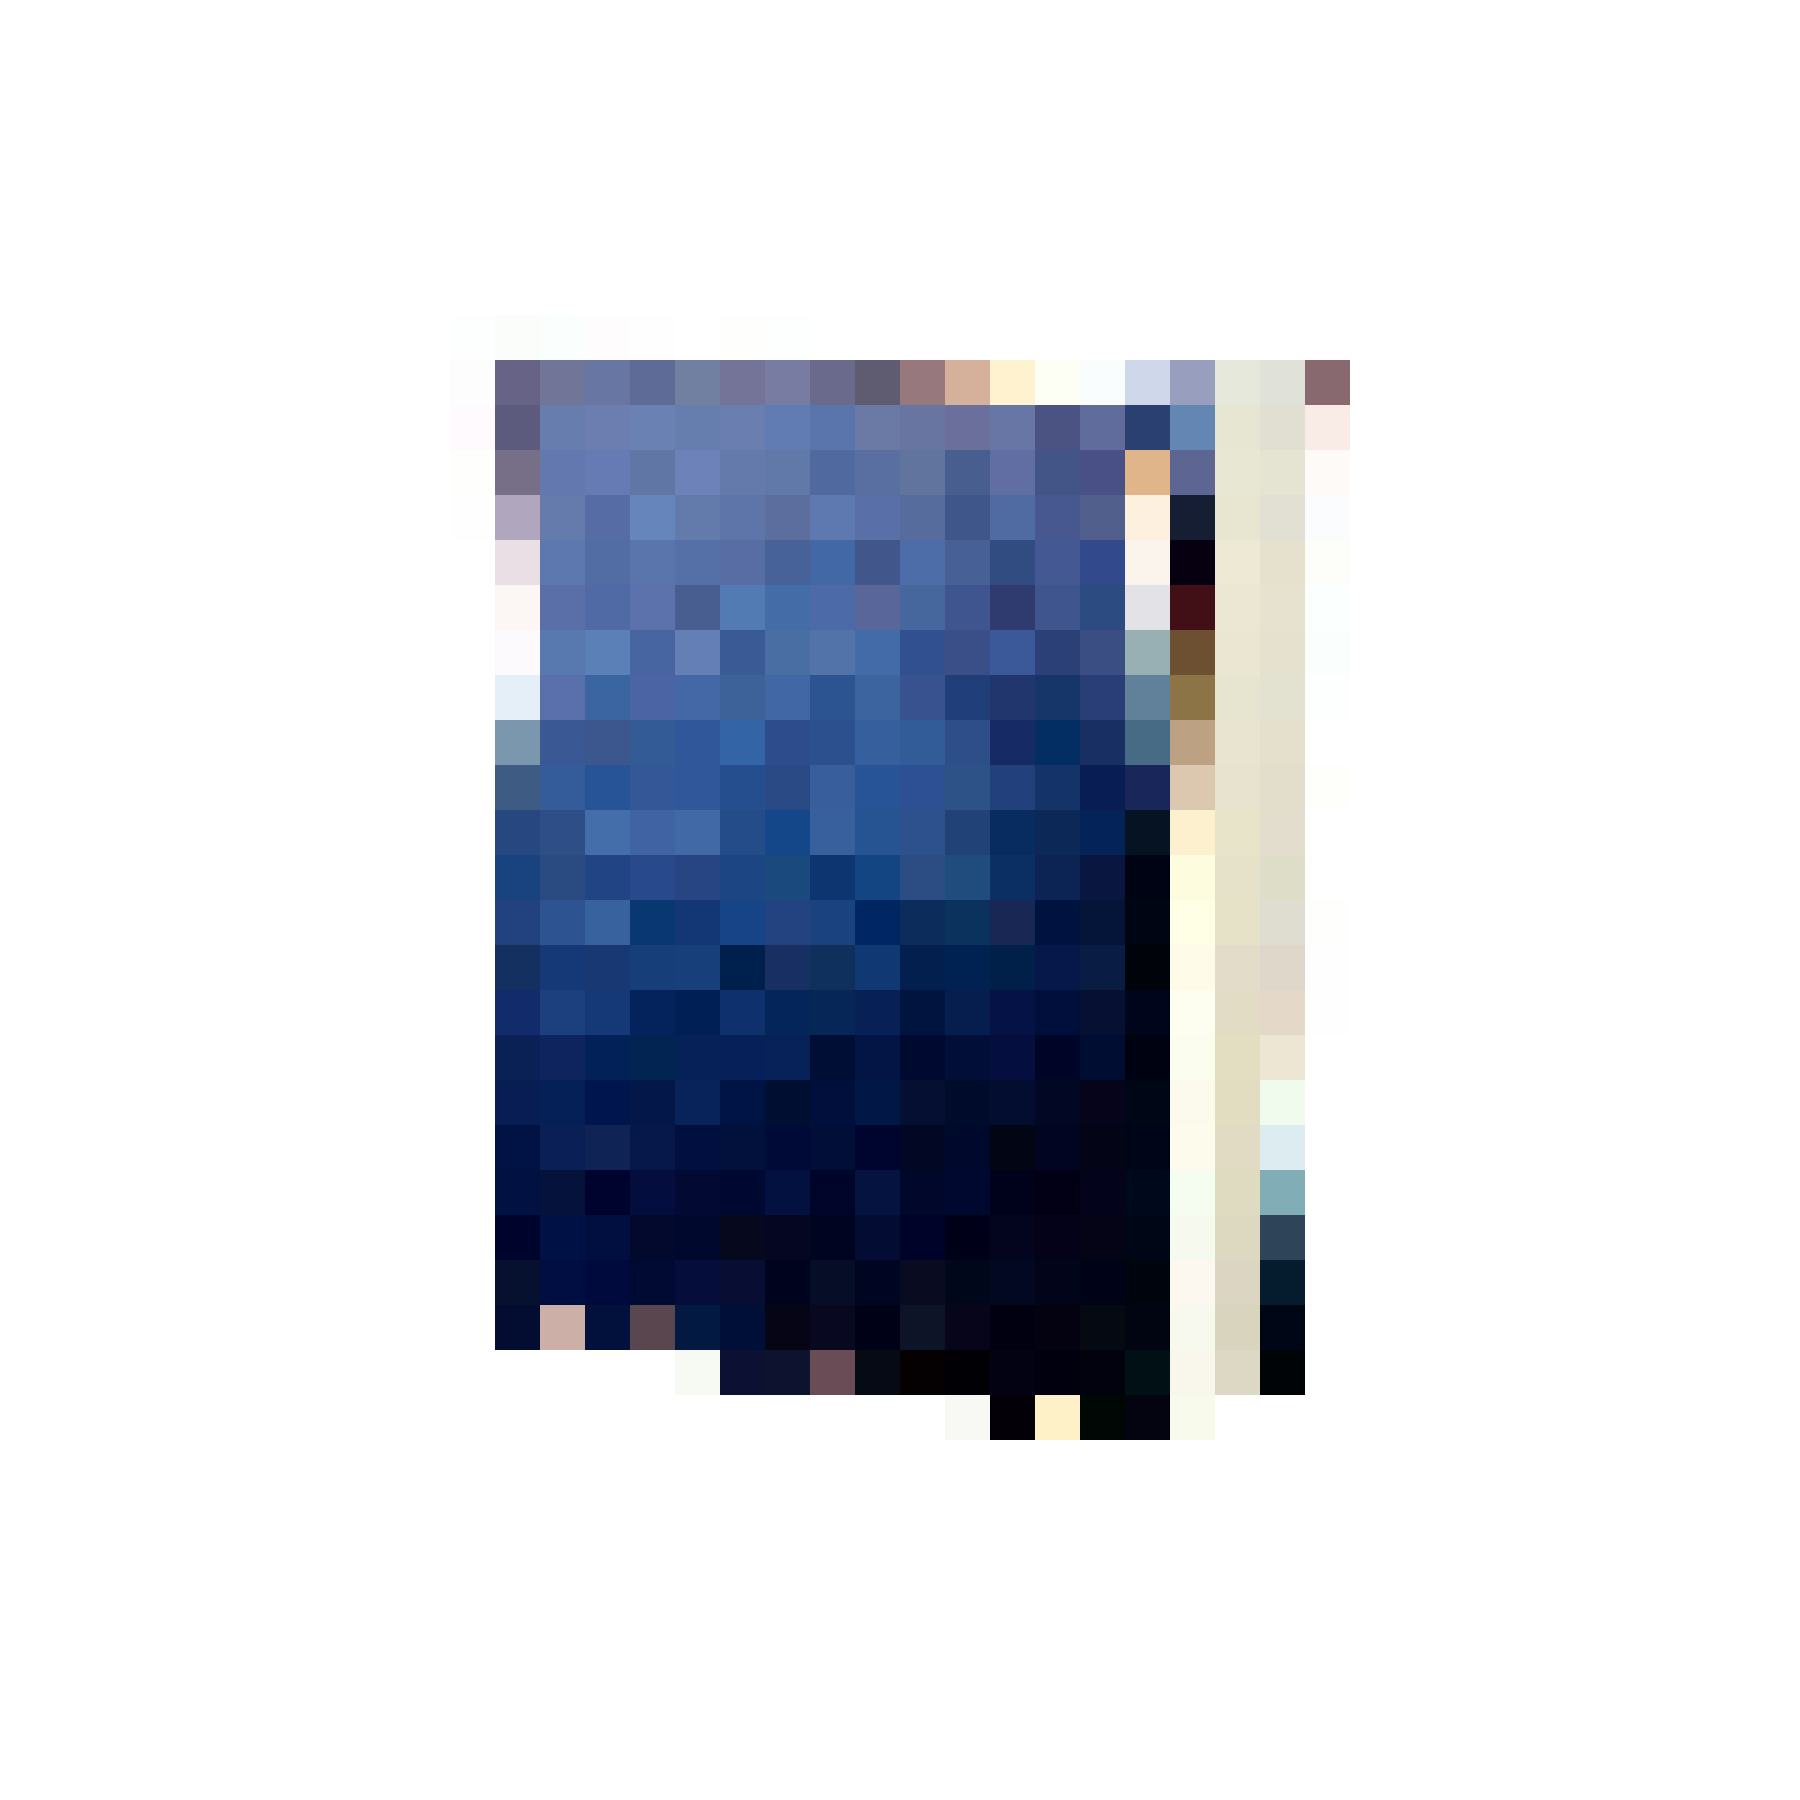 Oldschool: Fotoalbum Standard blau, 25 × 30 cm, Fr. 19.95, in ausgewählten Coop-Supermärkten.